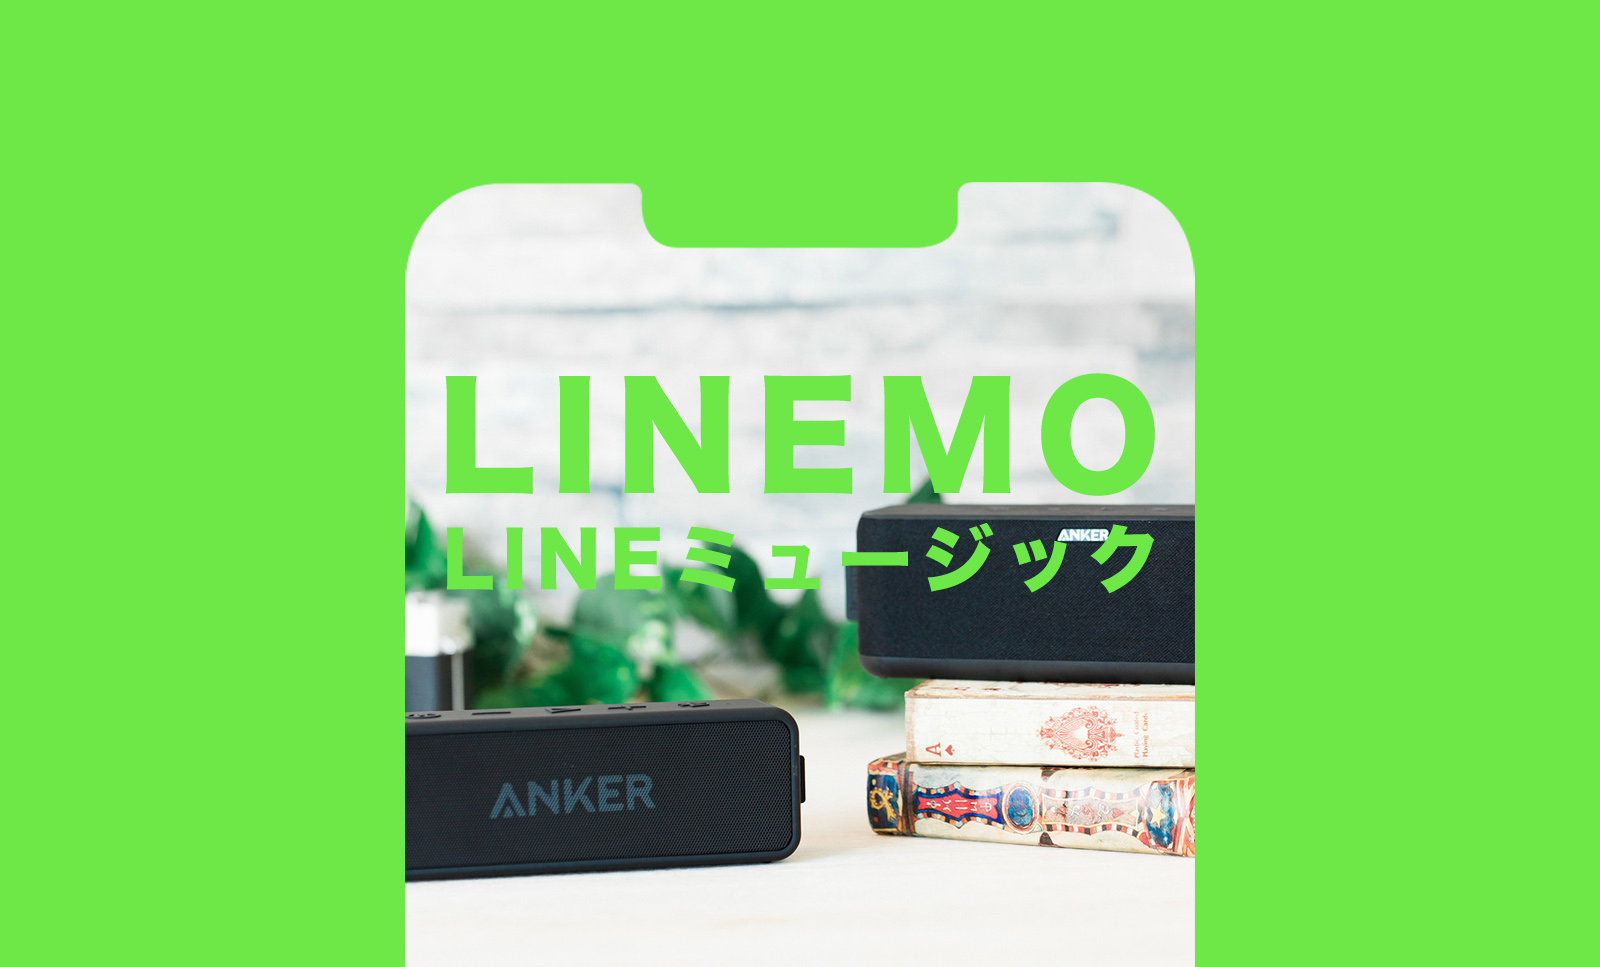 【終了済】LINEMO(ラインモ)でLINEミュージックが無料で楽しめるキャンペーンを解説のサムネイル画像